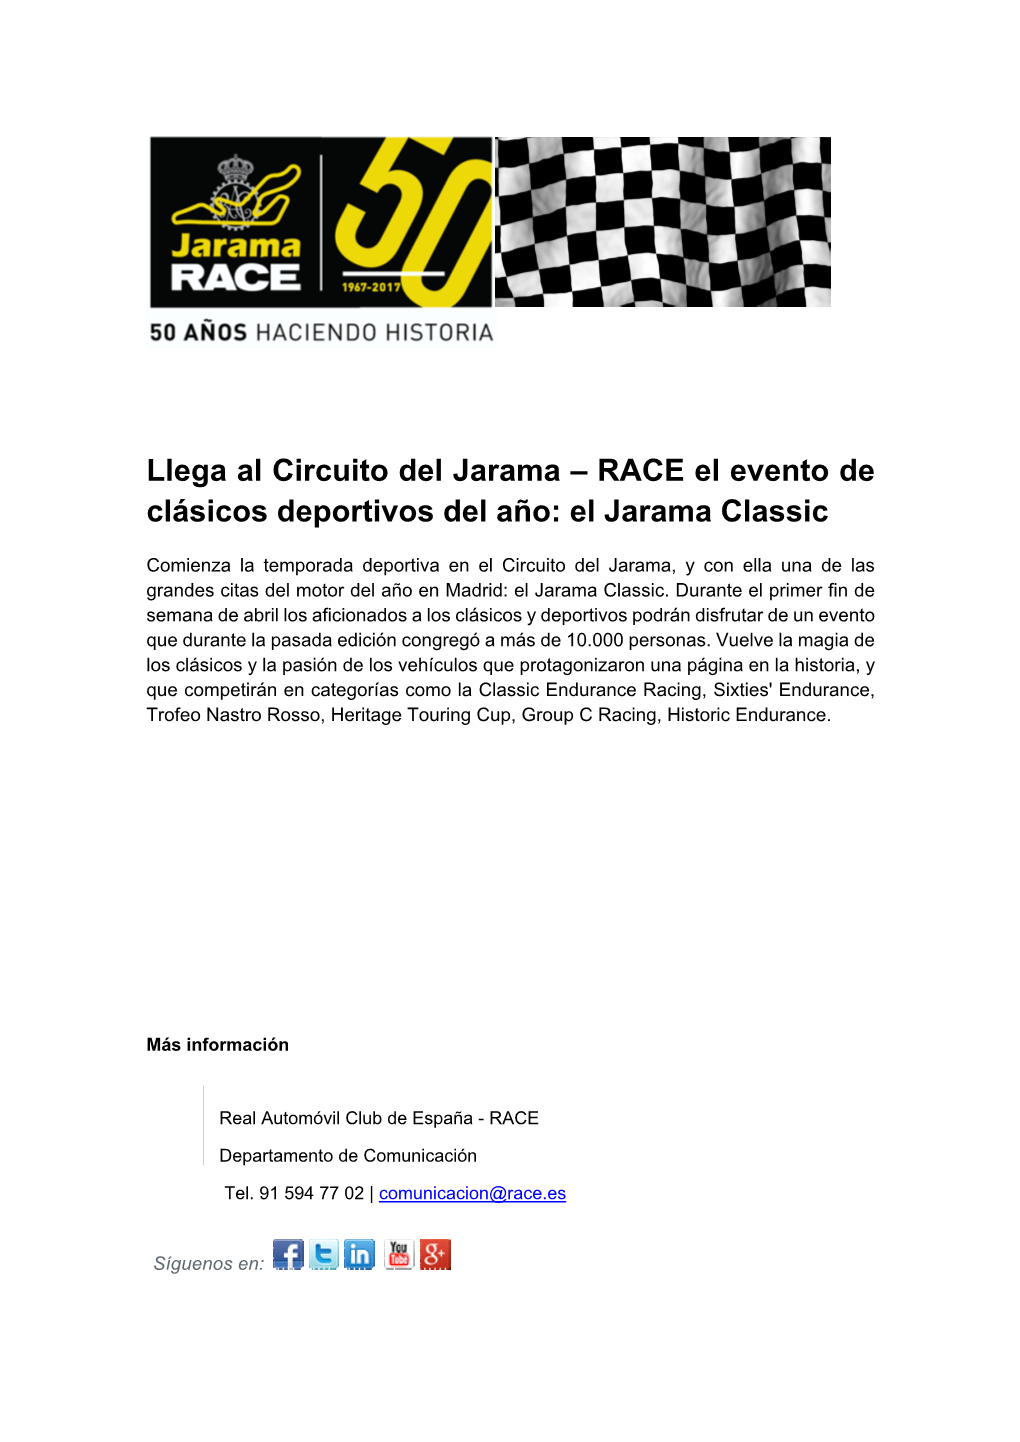 Llega Al Circuito Del Jarama – RACE El Evento De Clásicos Deportivos Del Año: El Jarama Classic